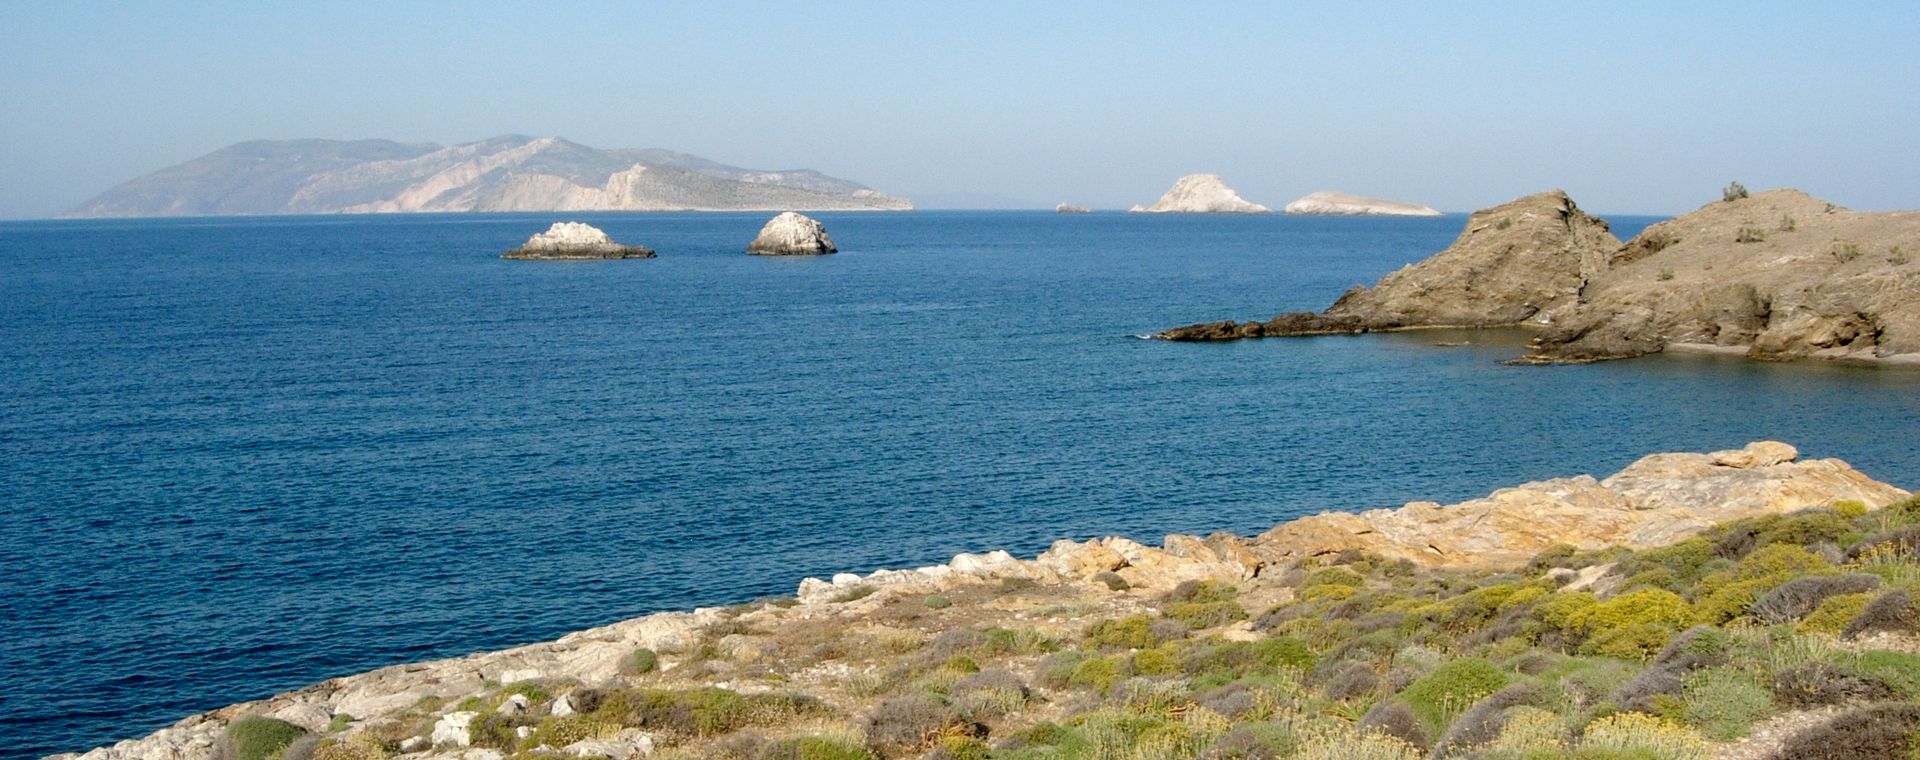 Vue sur la mer depuis Karavostasis, sur l'île de Folégandros